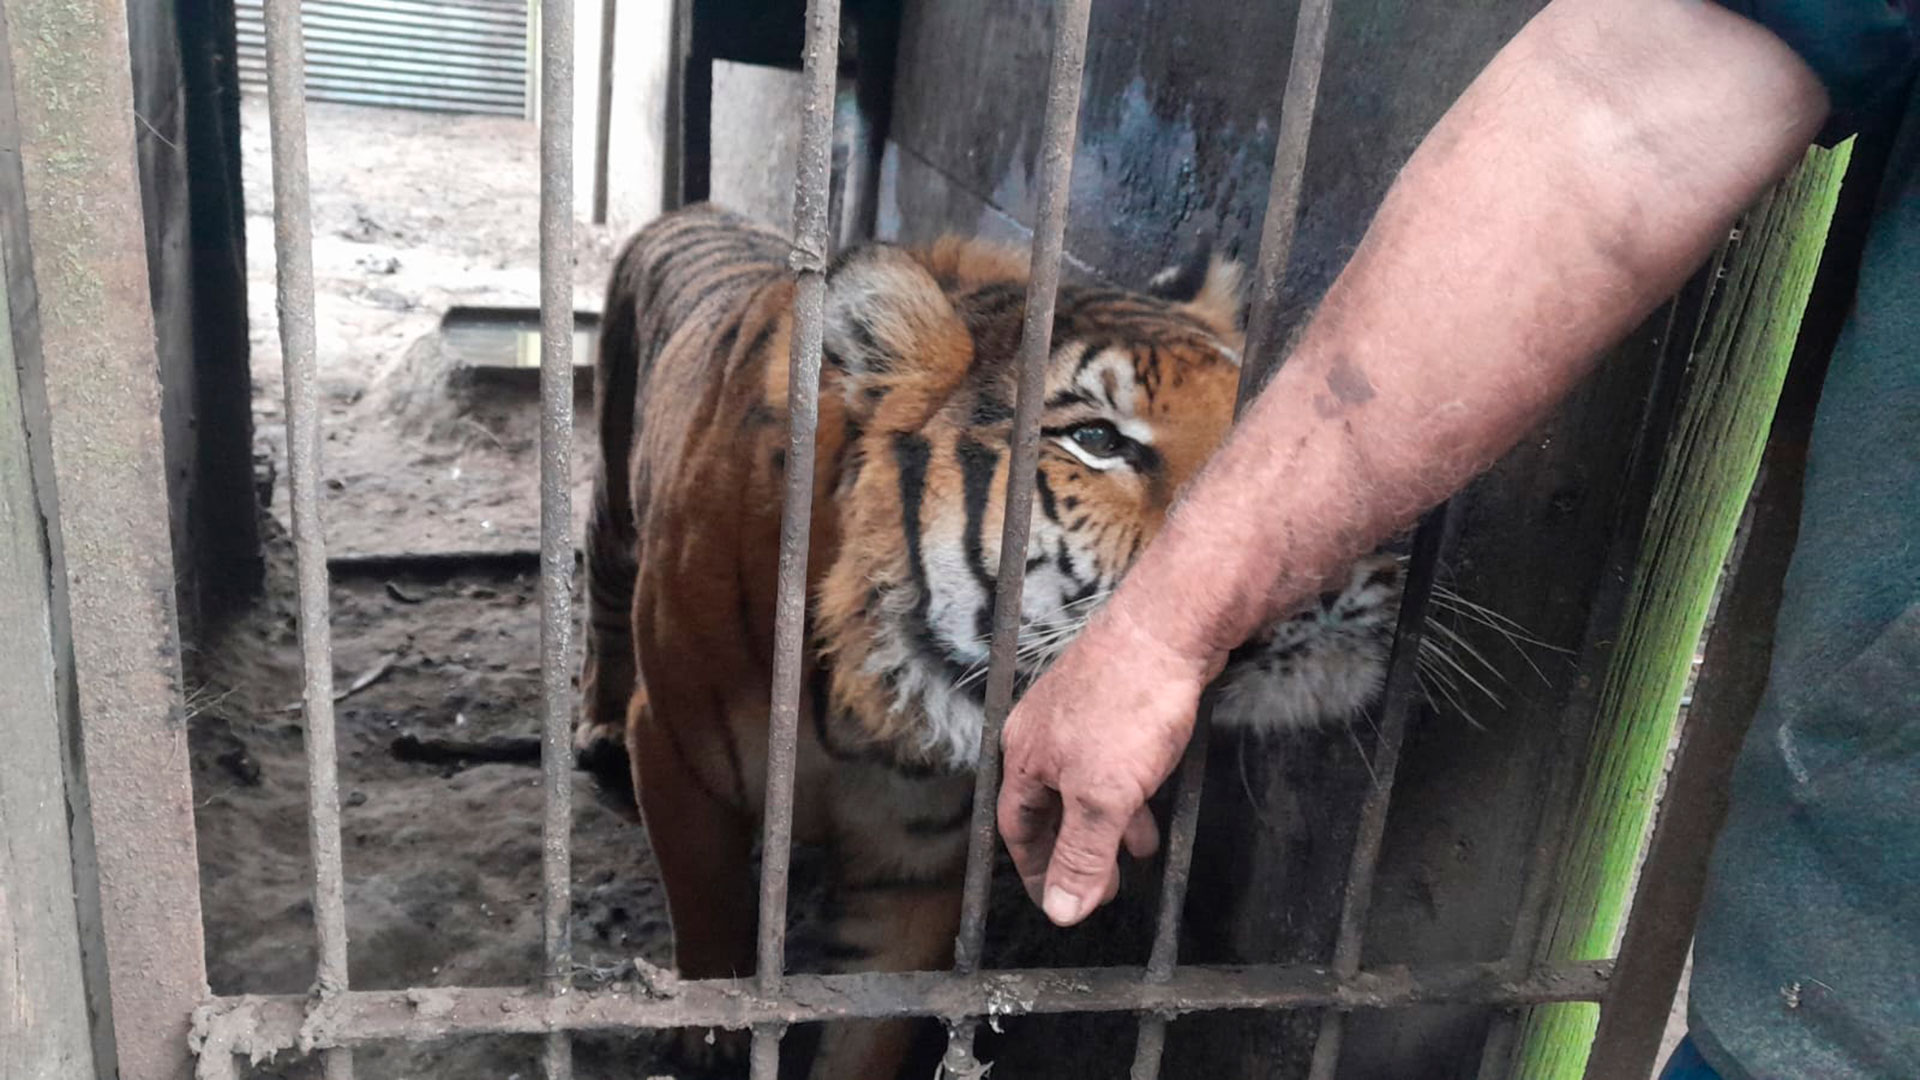 Los tigres vivían en condiciones precarias
